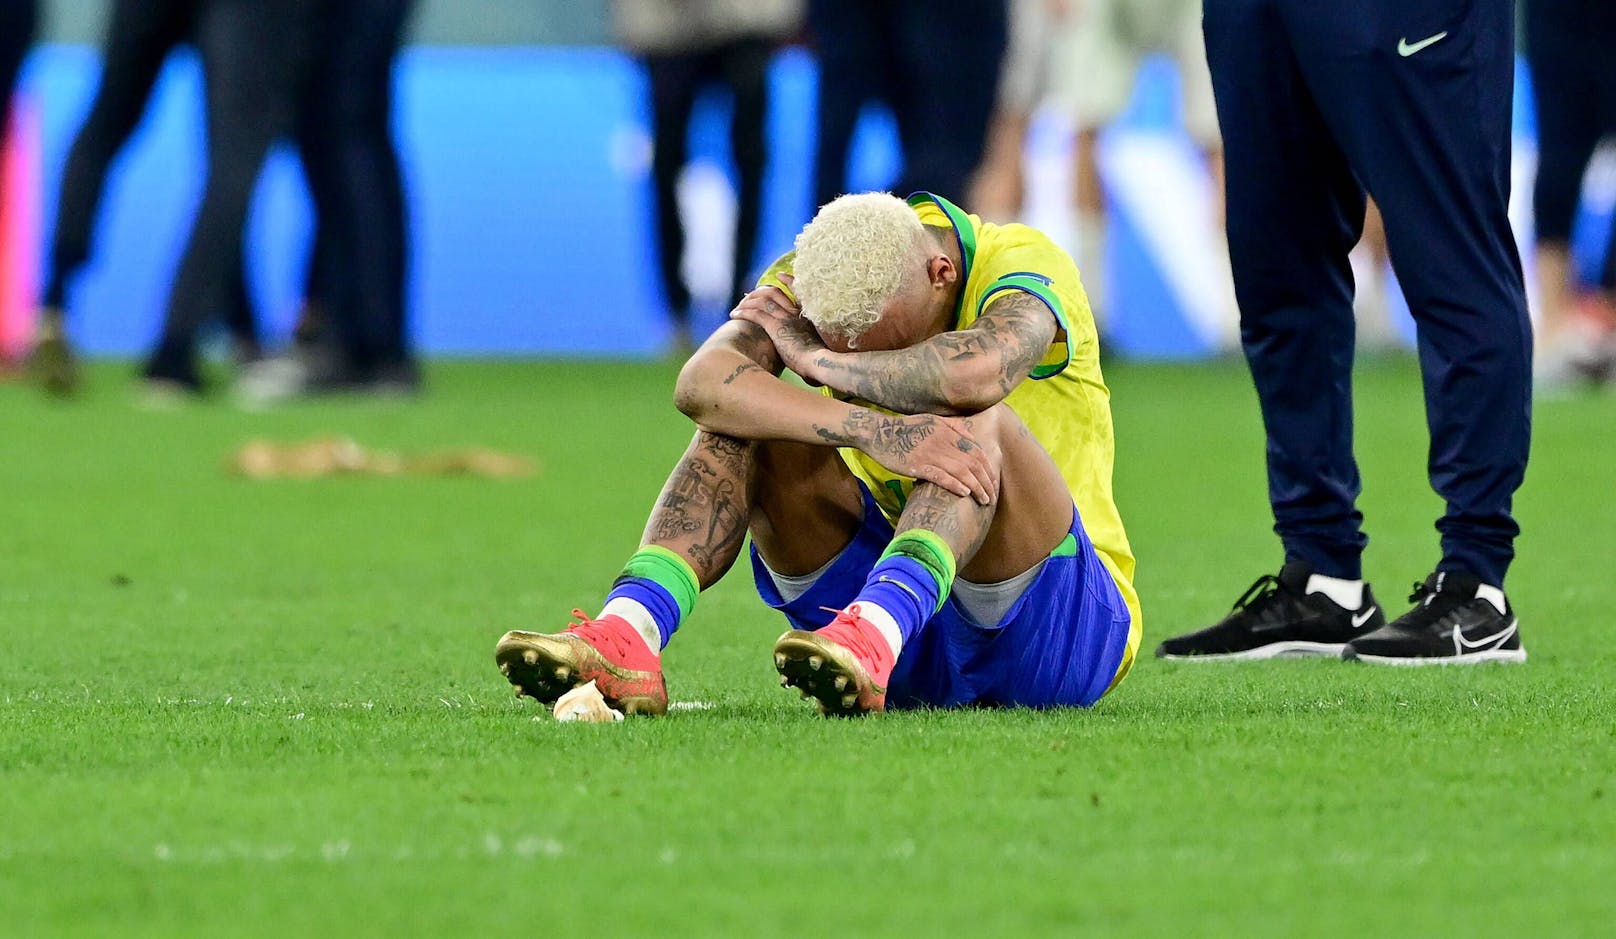 Auch Neymar jr. erwischte es im Viertelfinale. Der Superstar kam von einer Verletzung im Auftaktspiel zurück, brachte Brasilien gegen Kroatien in Führung, nur um unmittelbar vor dem Abpfiff den Ausgleich zu kassieren und im Elfmeterschießen auszuscheiden.